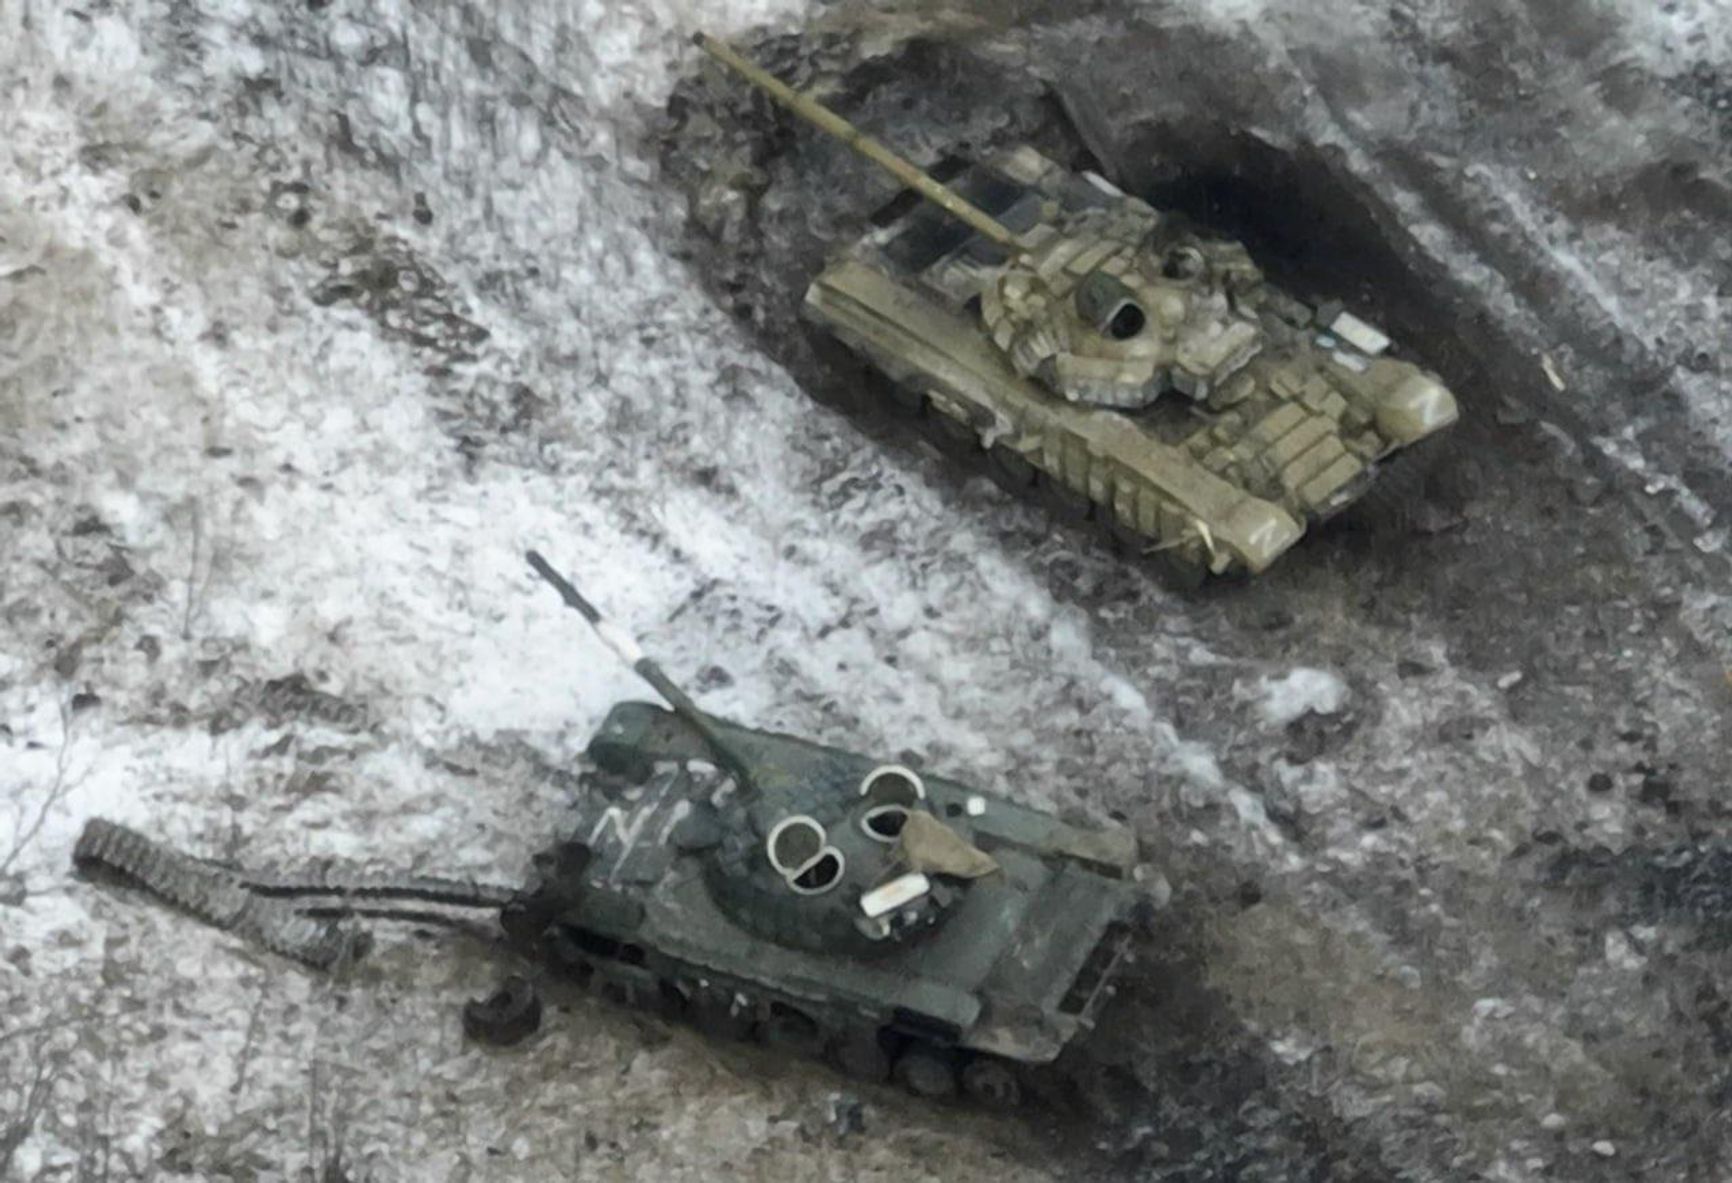 Россия потеряла под Угледаром за последние две недели 71 единицу техники — WarSpotting